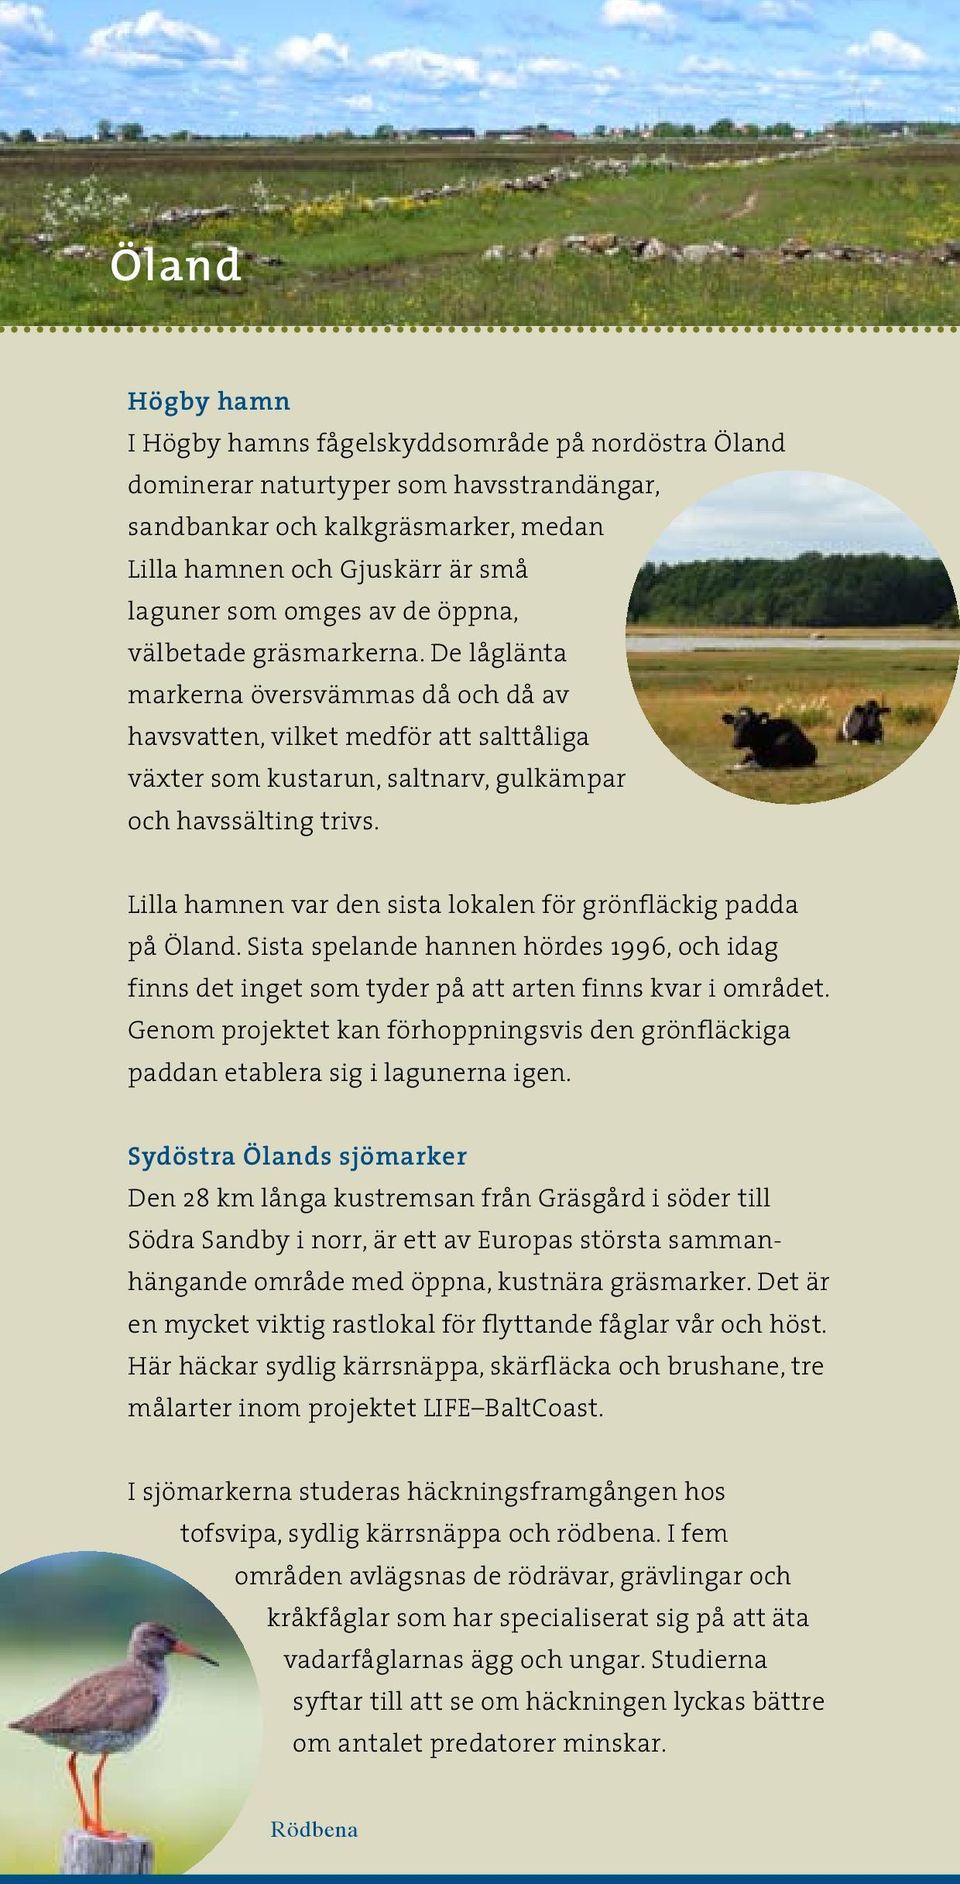 Lilla hamnen var den sista lokalen för grönfläckig padda på Öland. Sista spelande hannen hördes 1996, och idag finns det inget som tyder på att arten finns kvar i området.